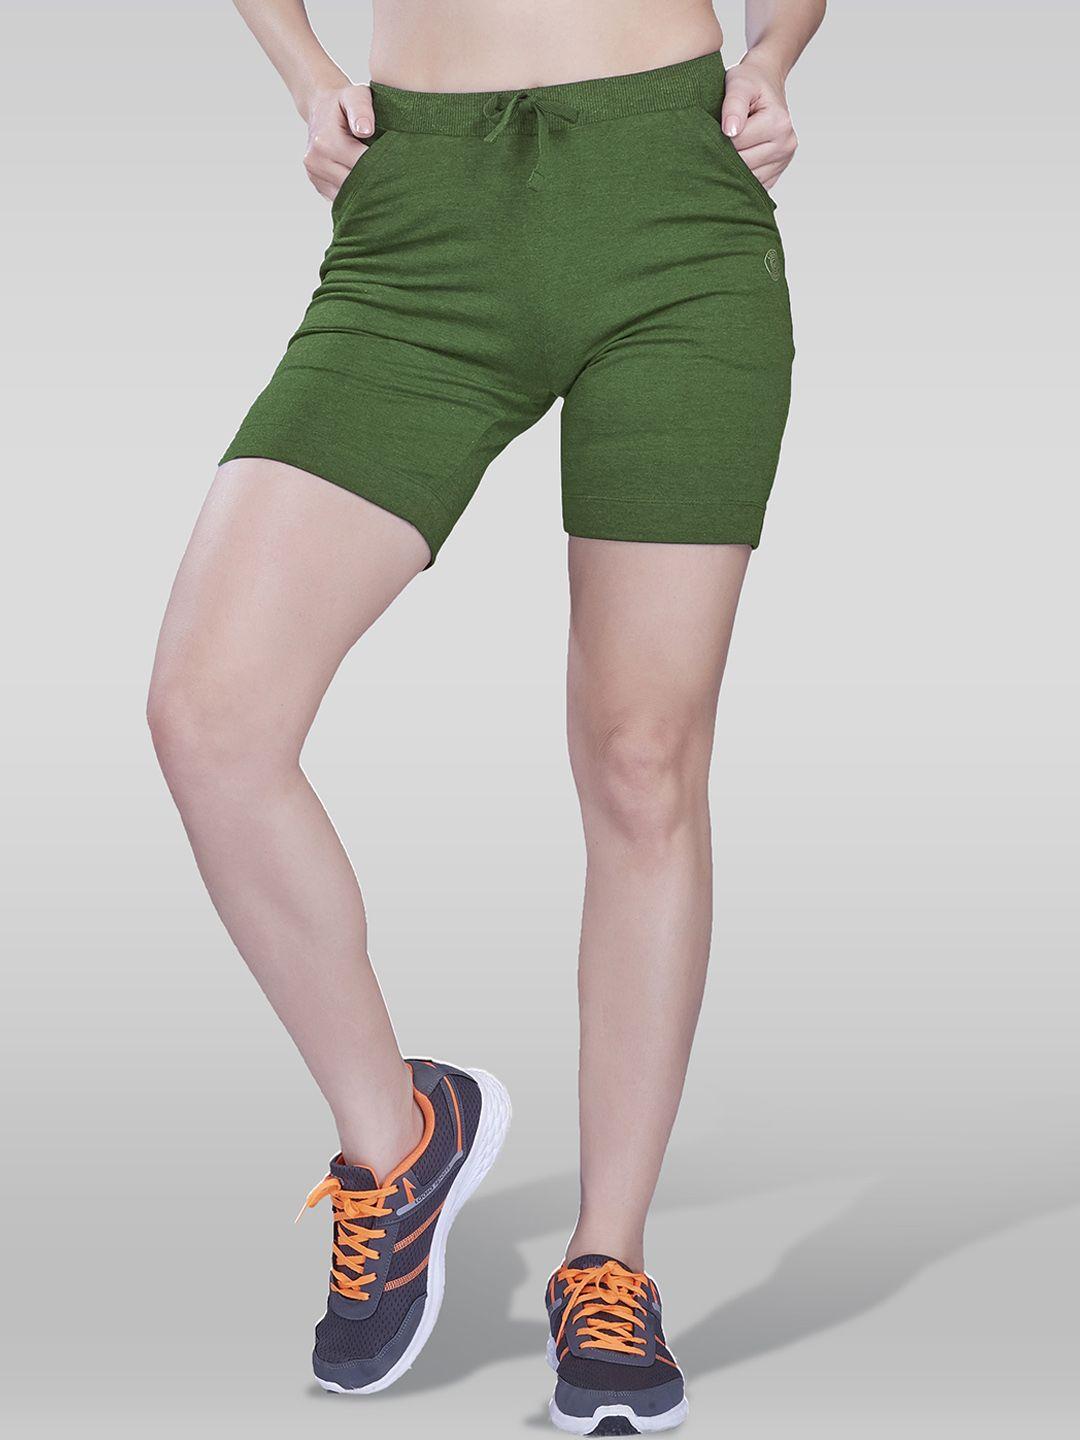 laasa  sports women slim fit mid rise dri-fit cotton sports shorts